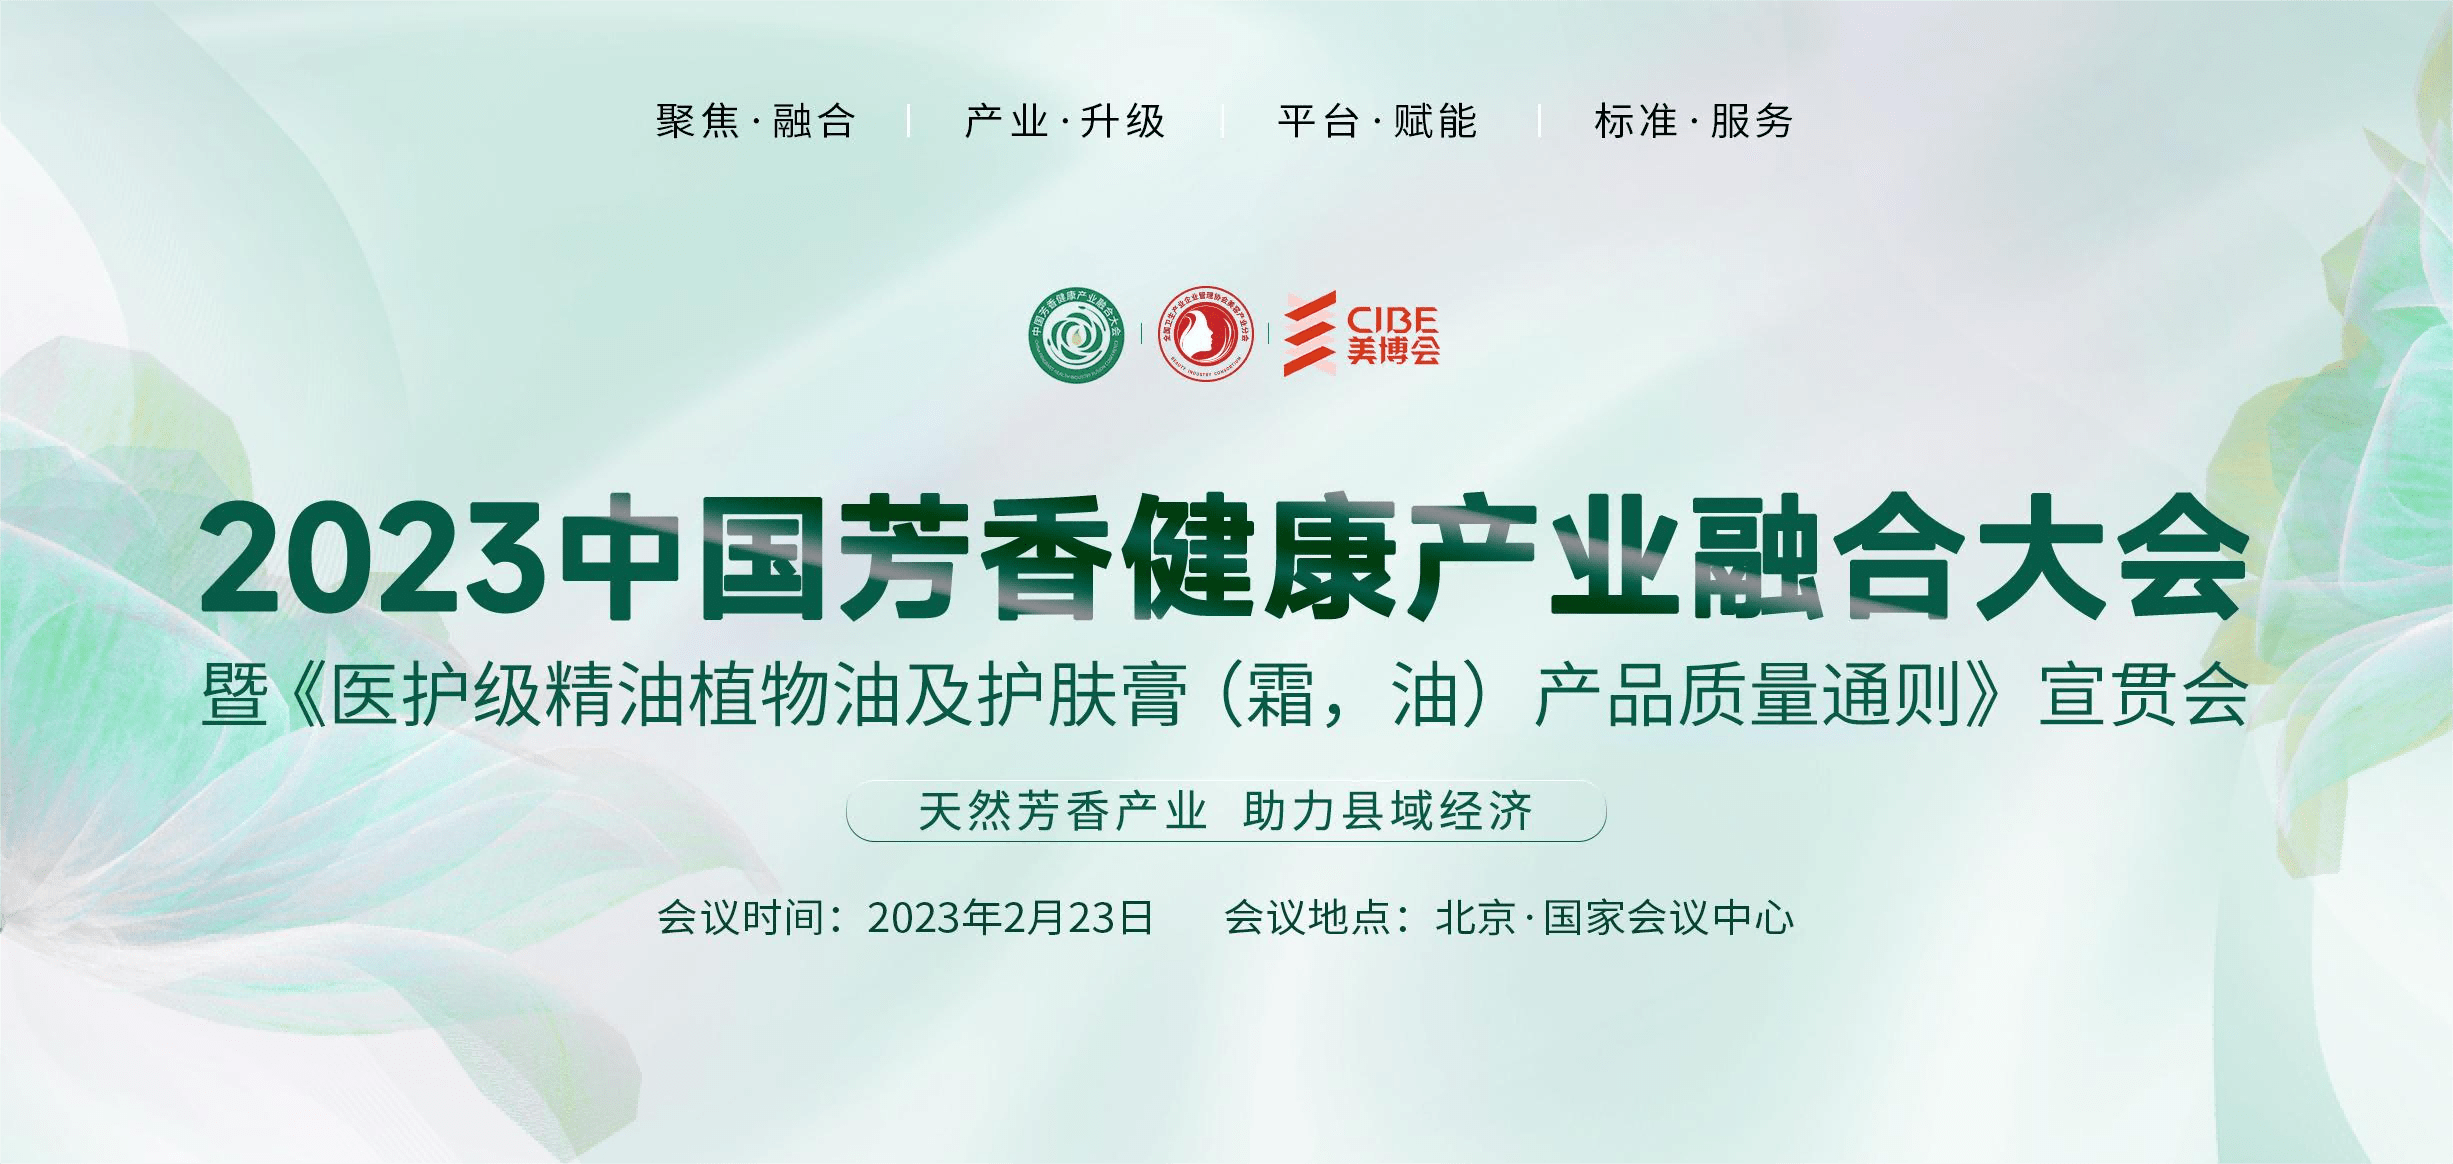 “2023中国芳香健康产业融合大会”即将召开